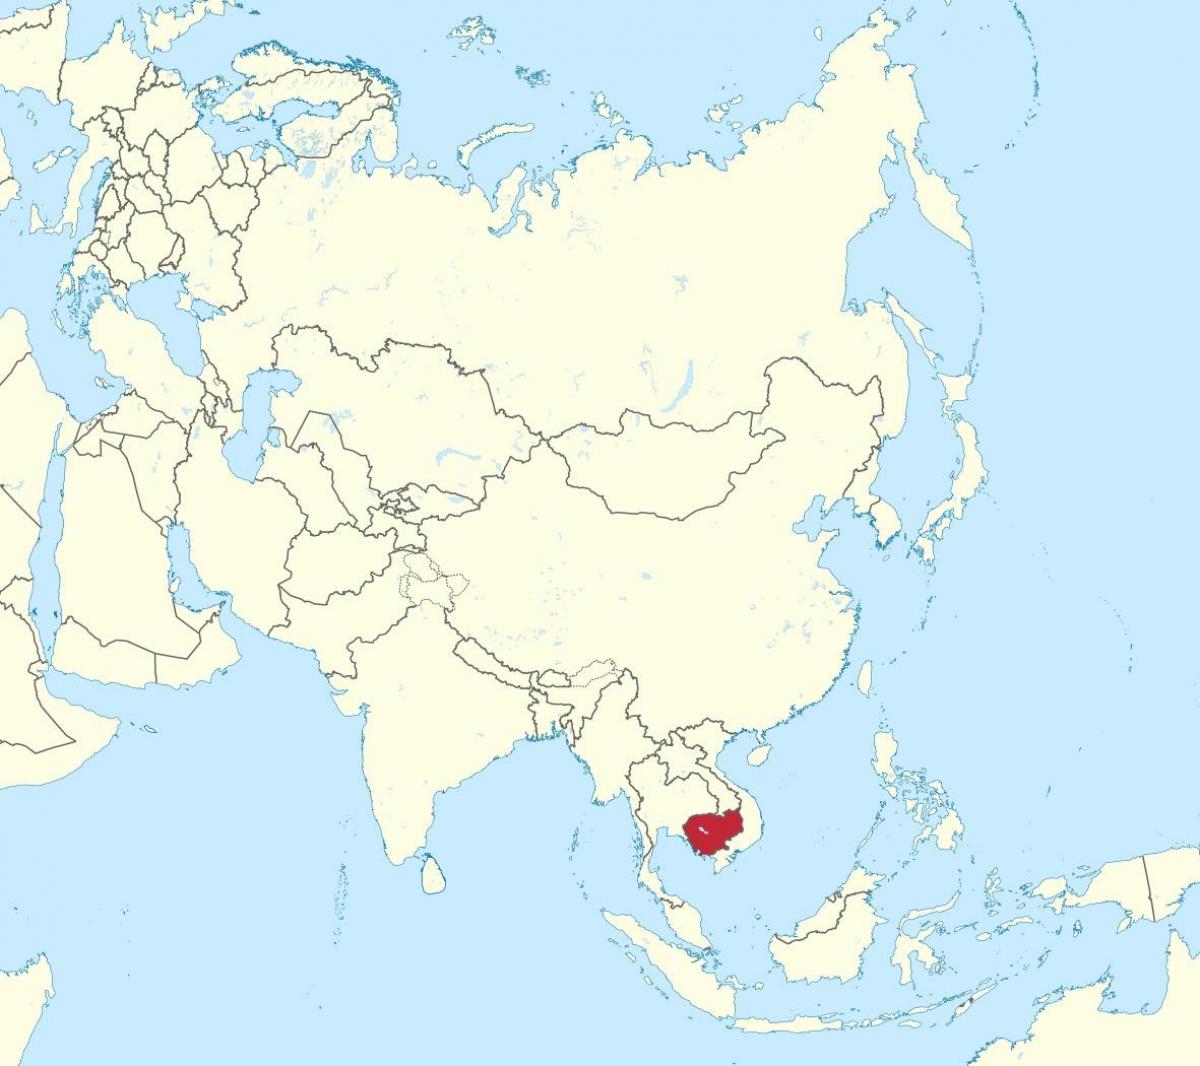 Bản đồ của Campuchia ở châu á